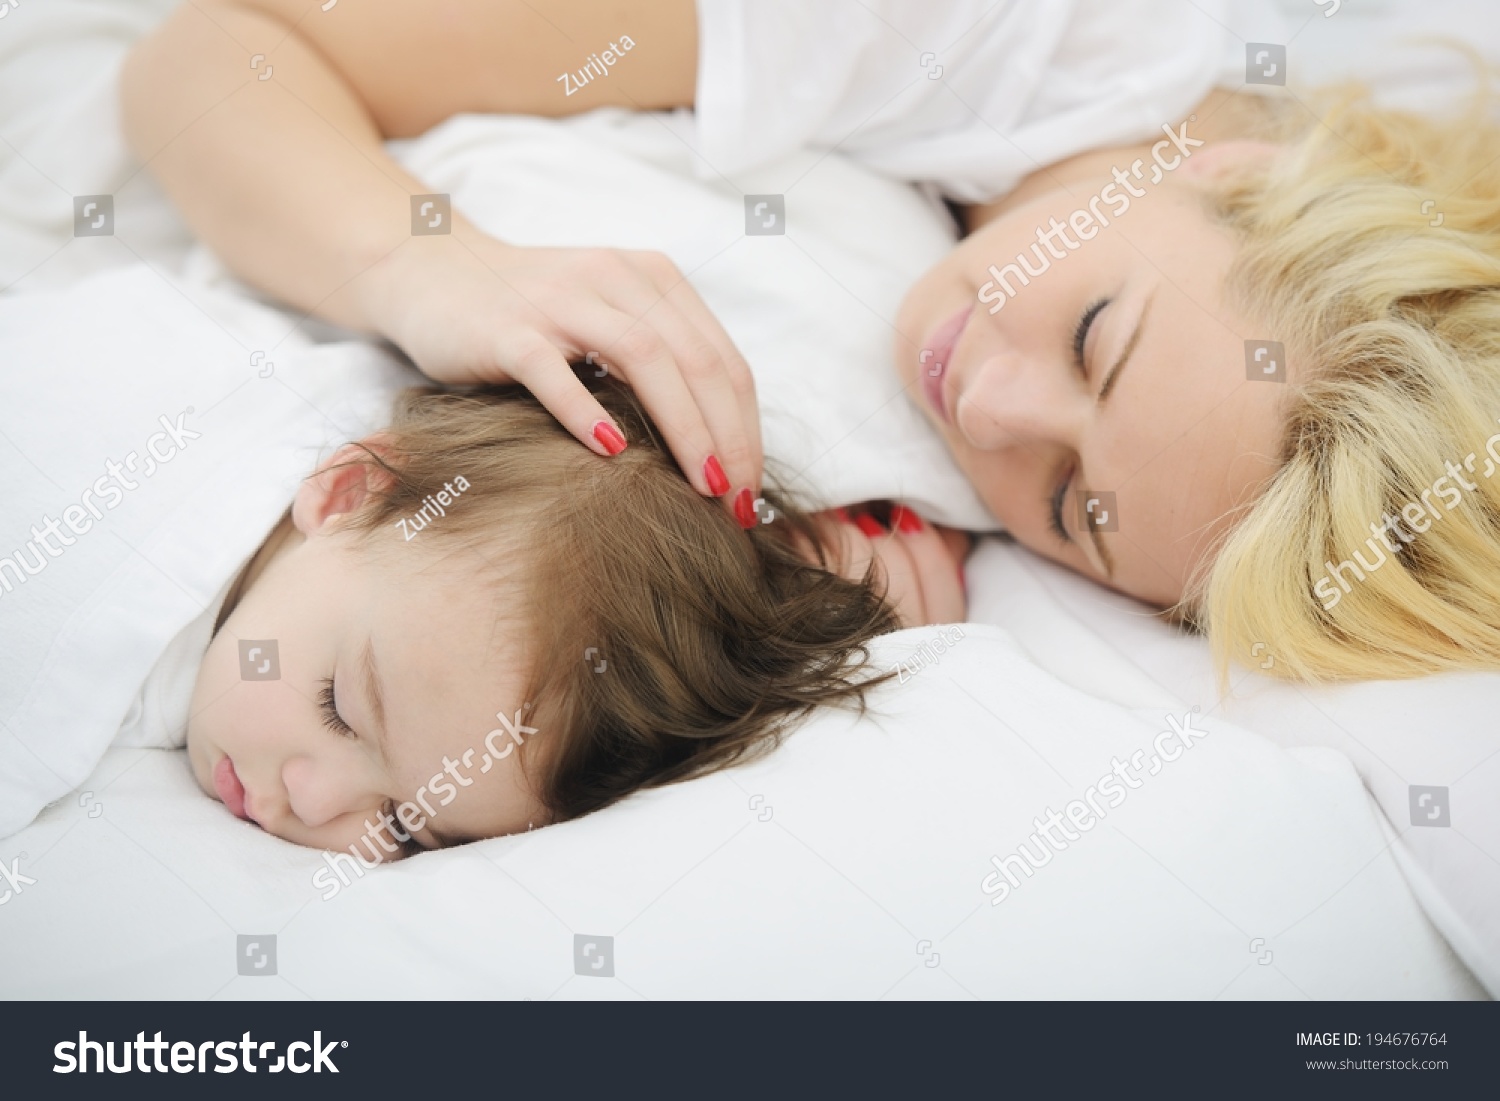 Внутрь спящей матери. Мать у кровати ребенка. Картинки сонной мамы.